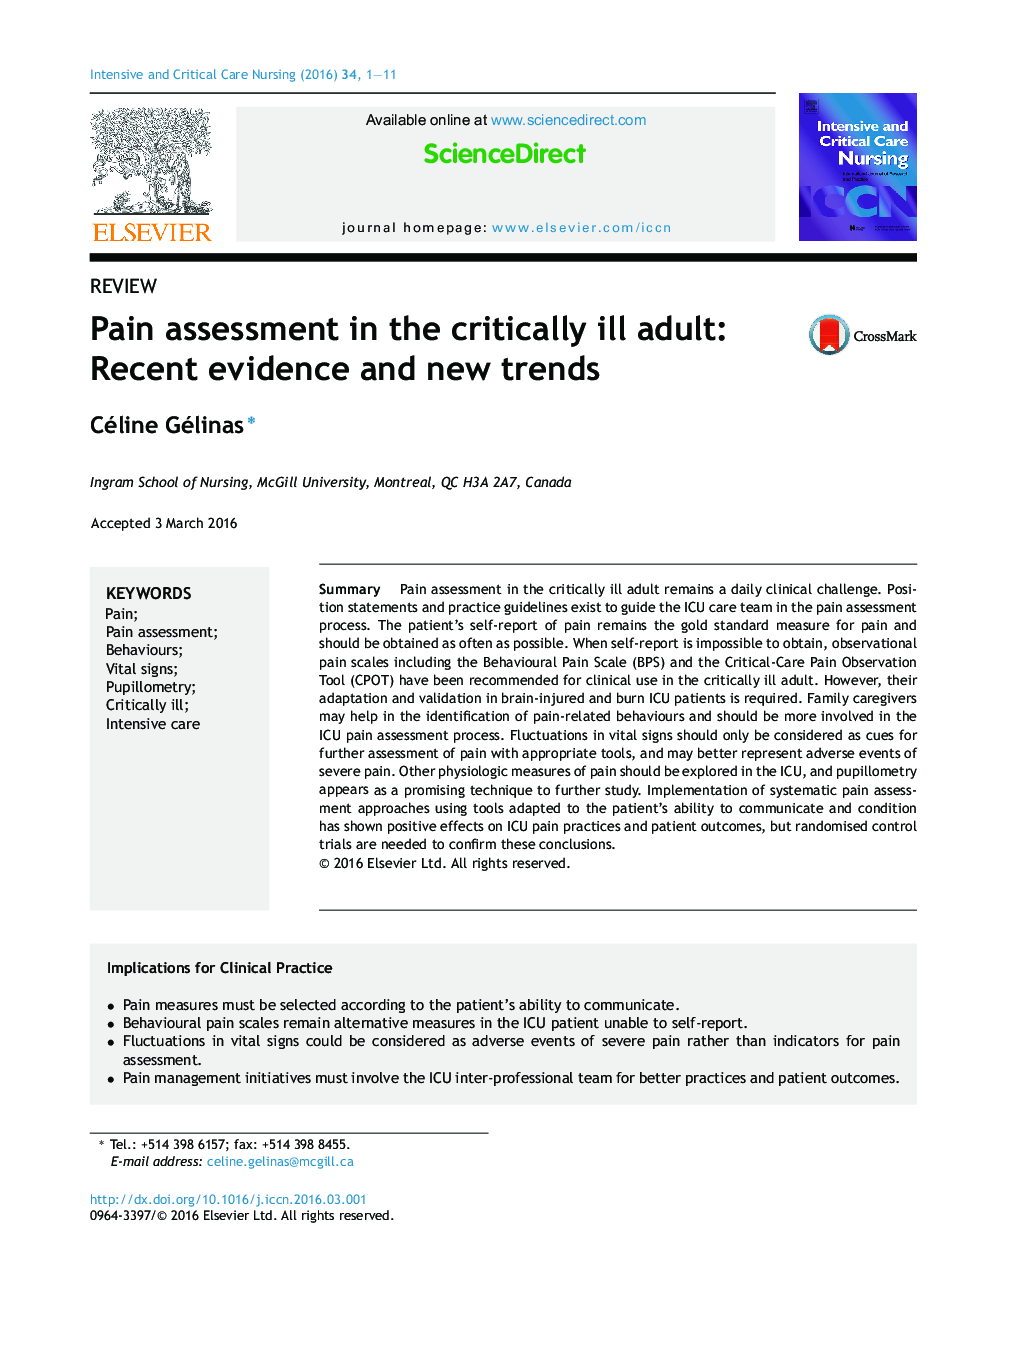 ارزیابی درد در بزرگسالان بدحال: شواهد اخیر و گرایش های جدید